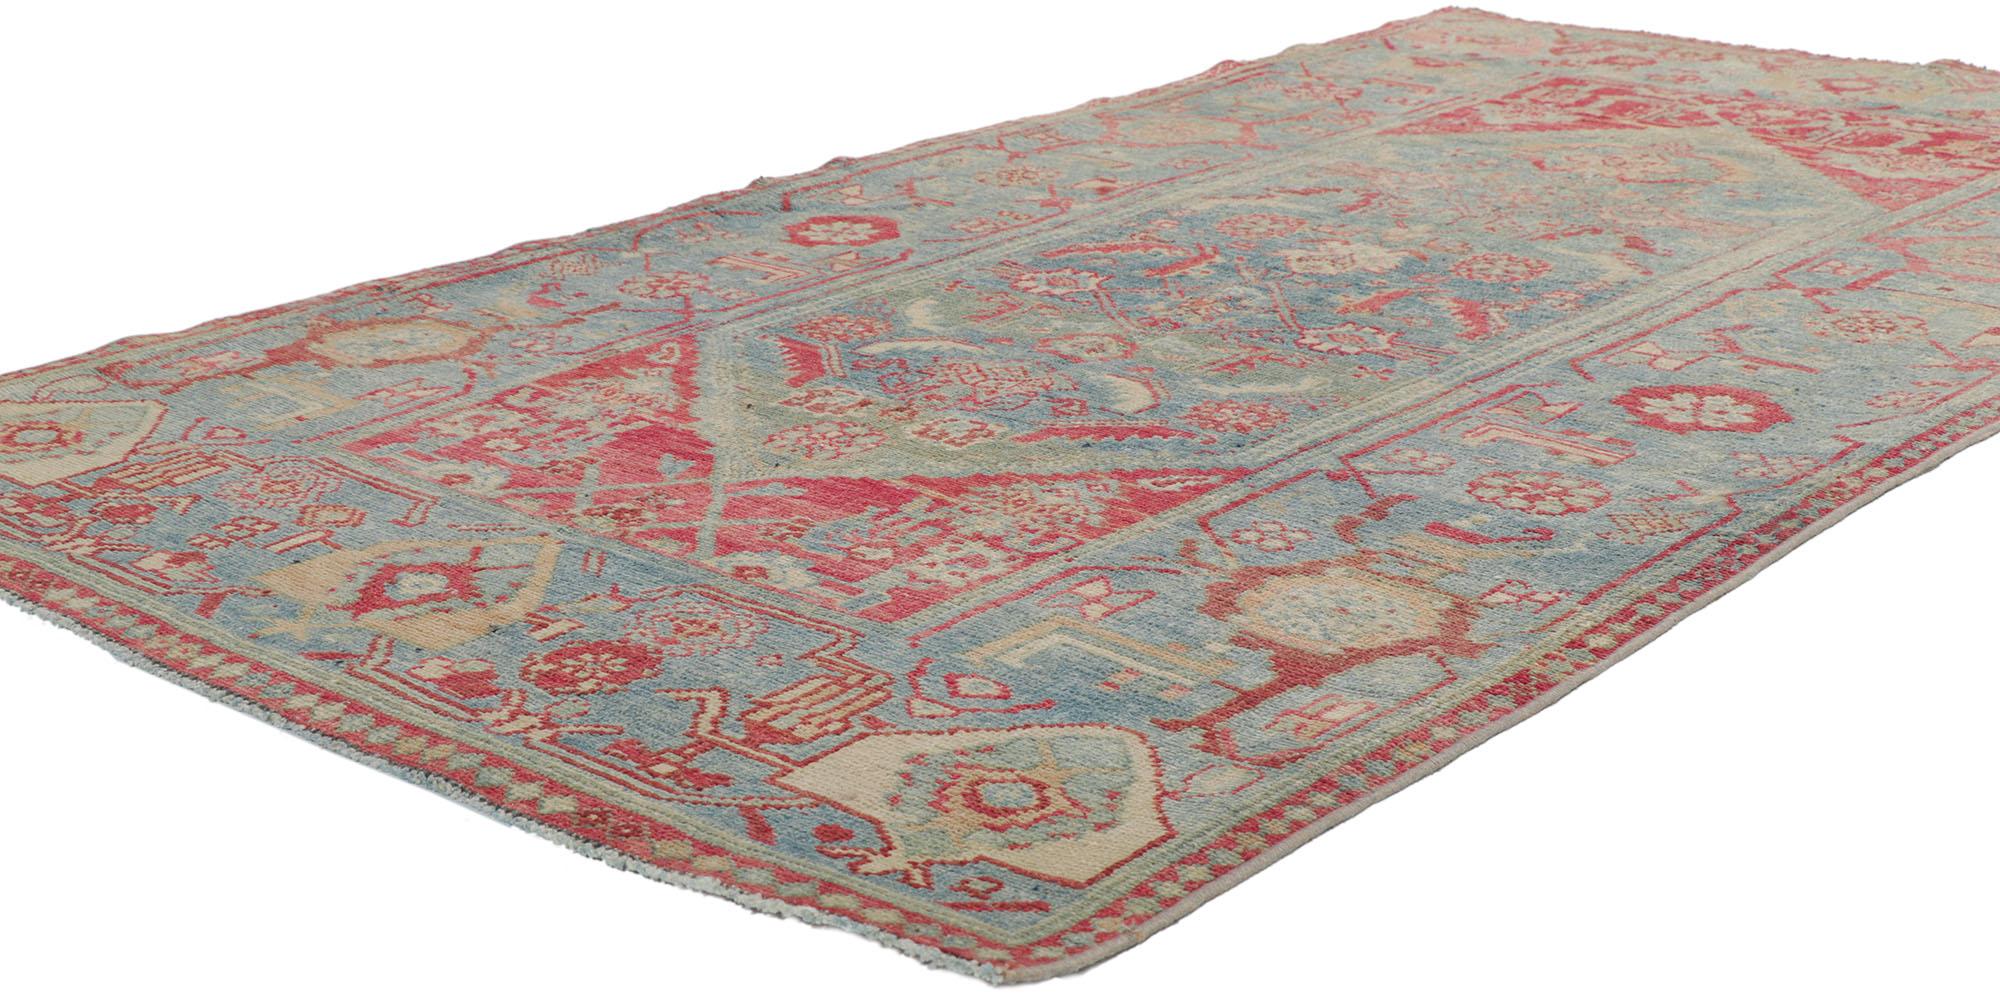 53769 Antiker persischer Malayer-Teppich, 03'09 x 06'10. Dieser handgeknüpfte antike persische Malayer-Teppich aus Wolle, der Raffinesse und böhmischen Charme ausstrahlt, verkörpert auf wunderbare Weise den rustikalen Boho-Chic-Stil. Das abgewetzte